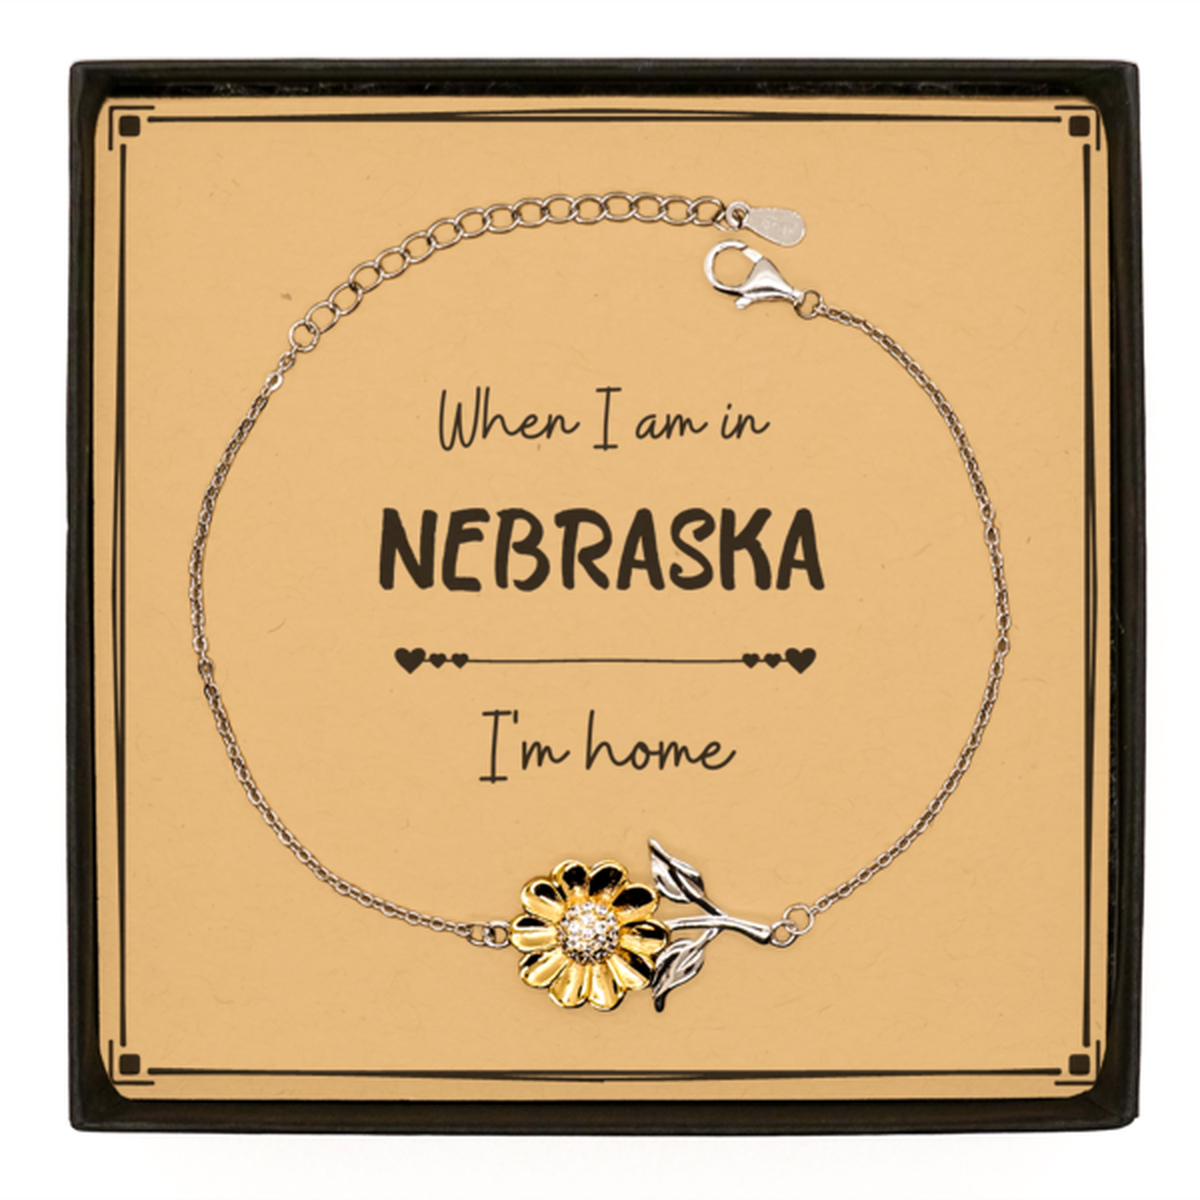 When I am in Nebraska I'm home Sunflower Bracelet, Message Card Gifts For Nebraska, State Nebraska Birthday Gifts for Friends Coworker